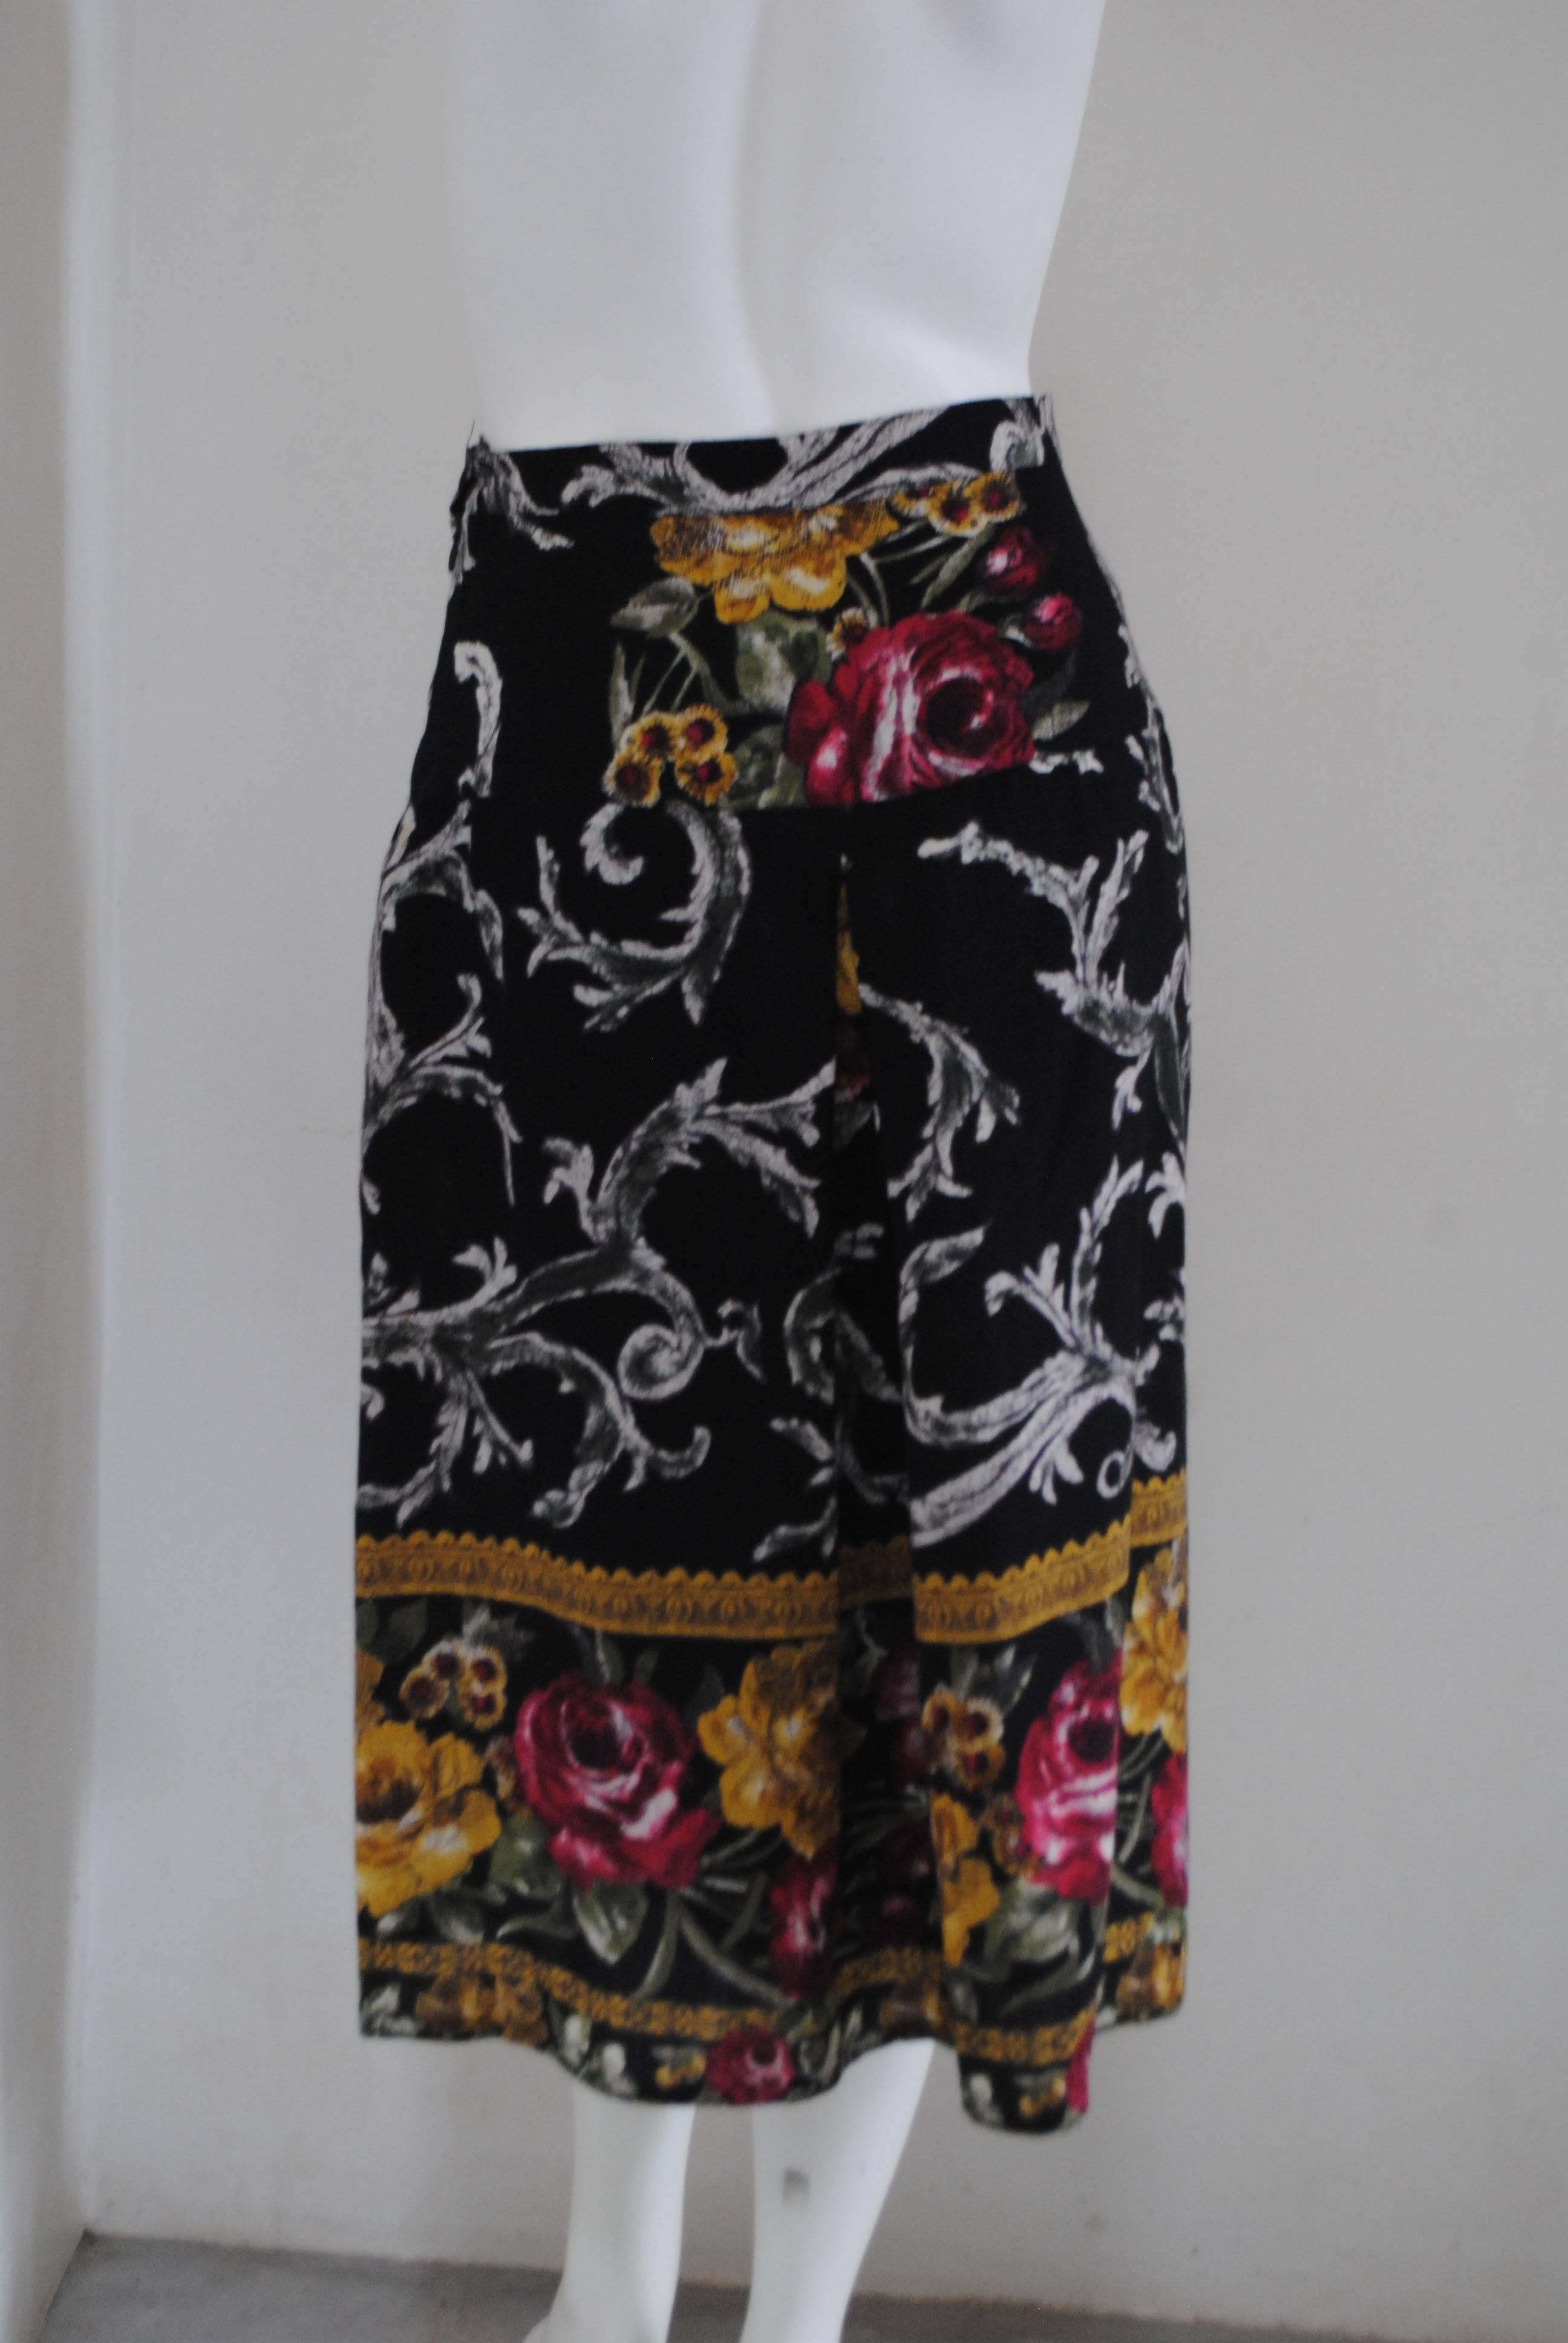 jupe fleurie en laine vintage des années 80

Totalement fabriqué en Italie en taille S

Composition : Laine